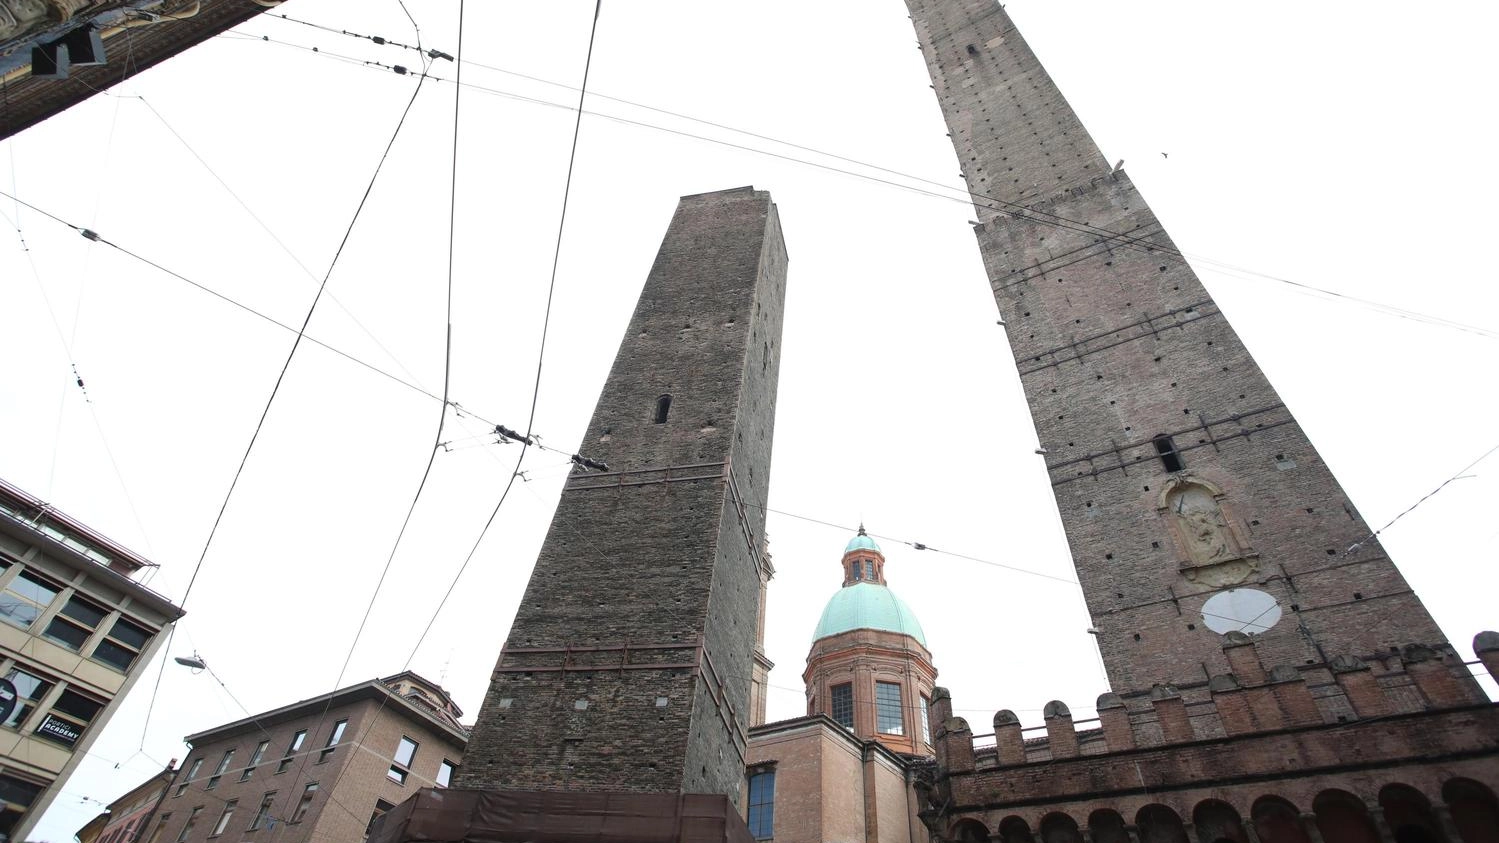 Il sindaco Lepore illustra le tappe degli interventi per la torre a rischio. Il ministro Sangiuliano: "Patrimonio Unesco? Non serve a consolidarla". .